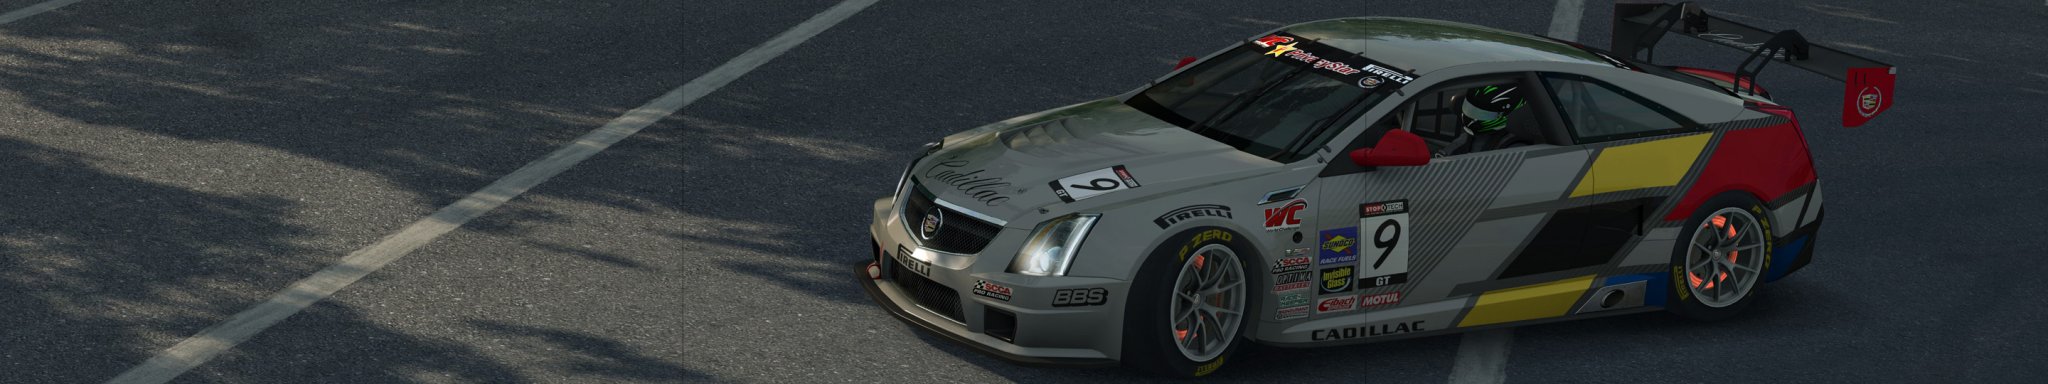 1 RACEROOM GT1 GT2 GT3 GT4 at NORISRING copy.jpg